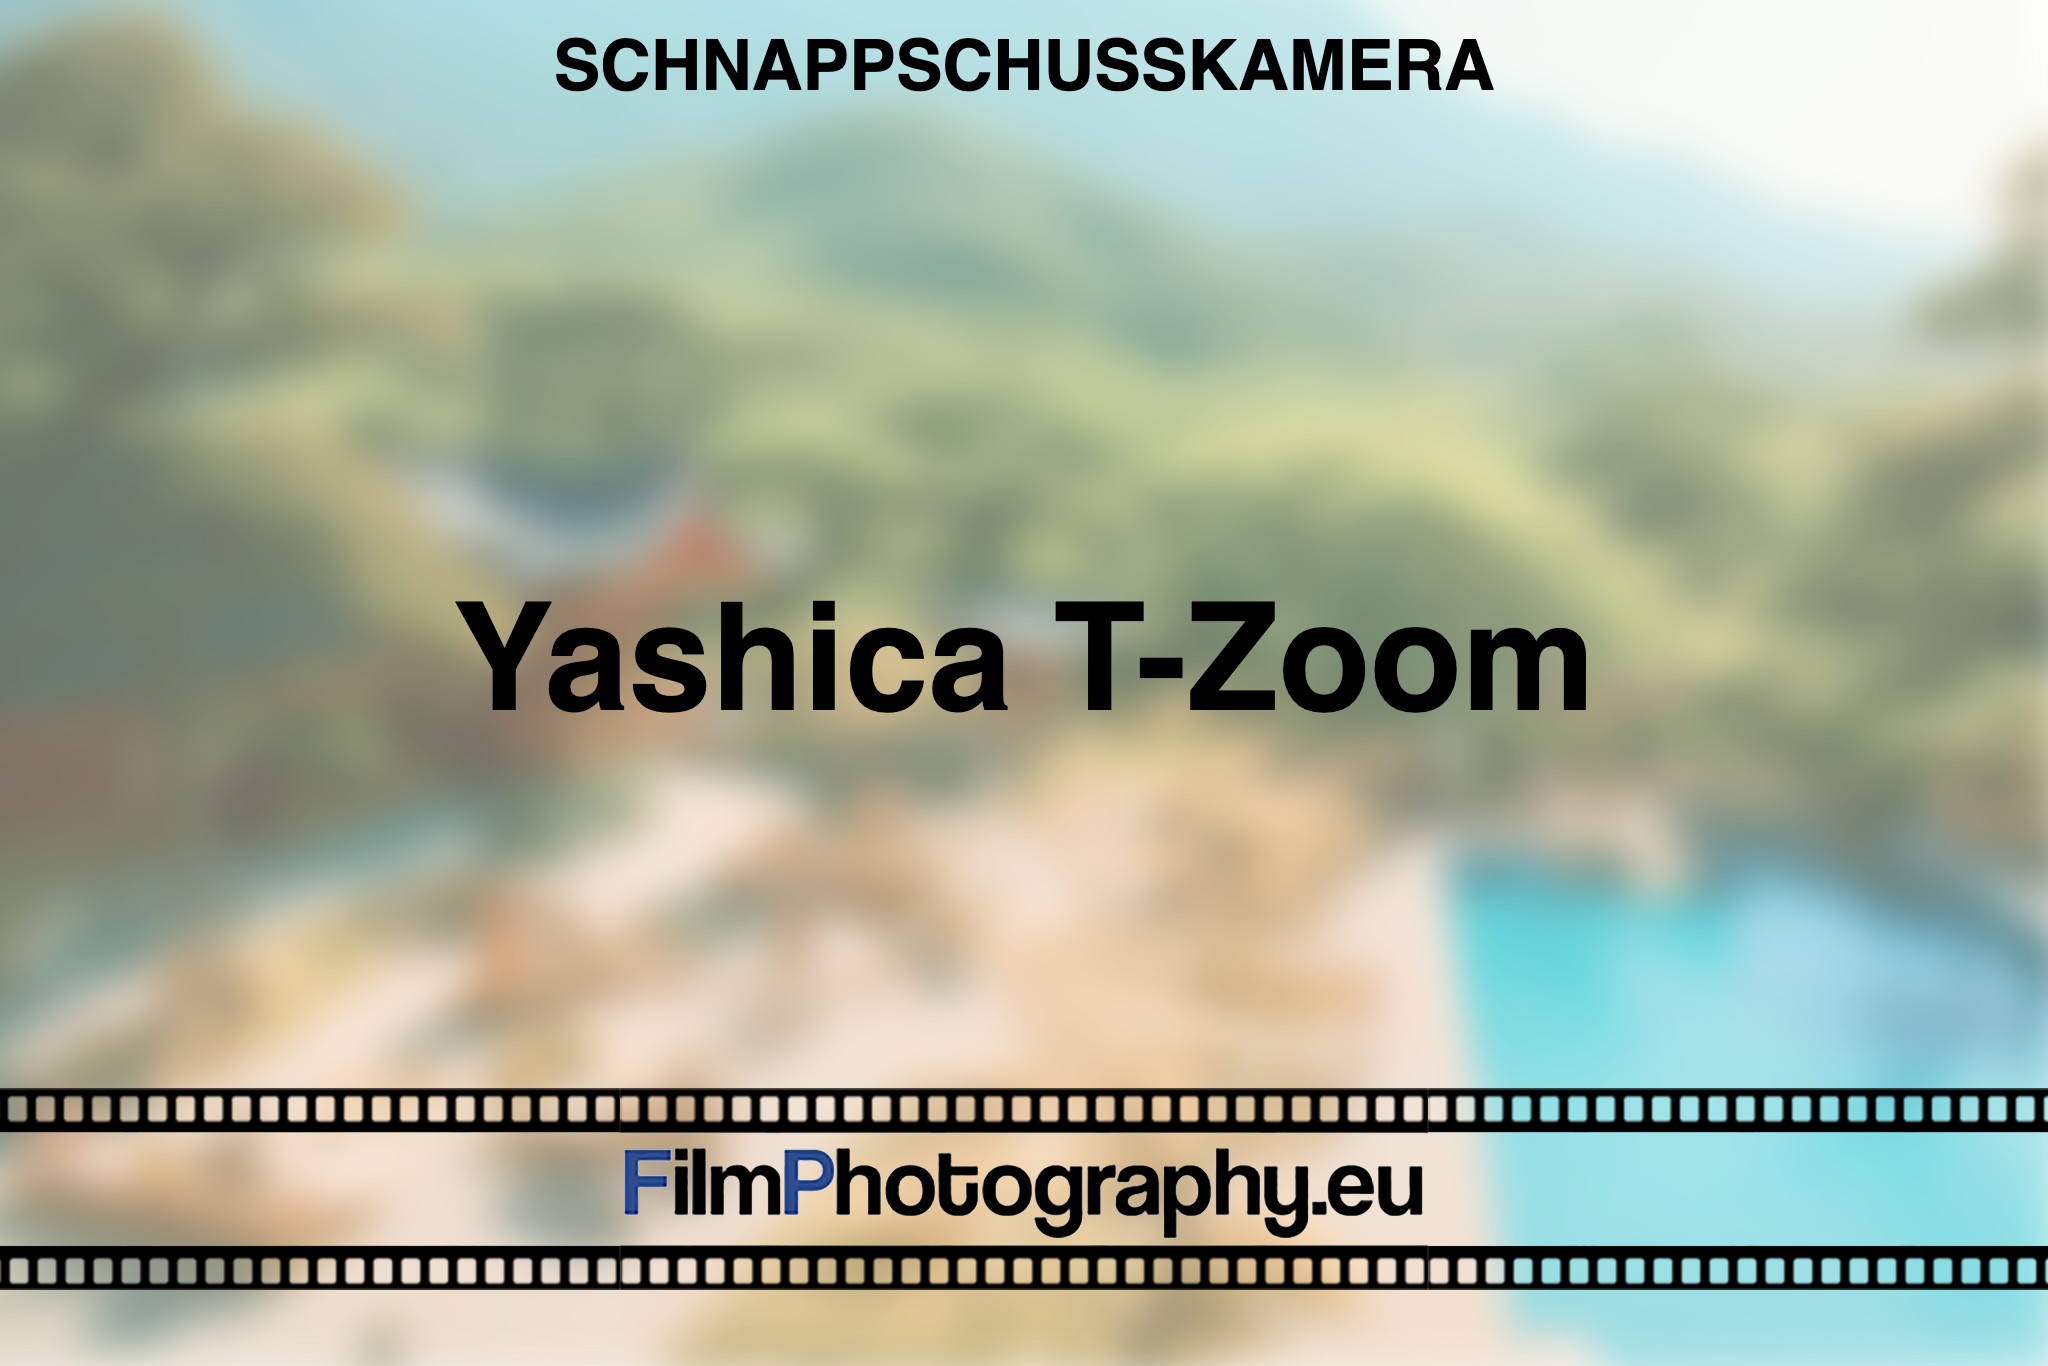 yashica-t-zoom-schnappschusskamera-bnv